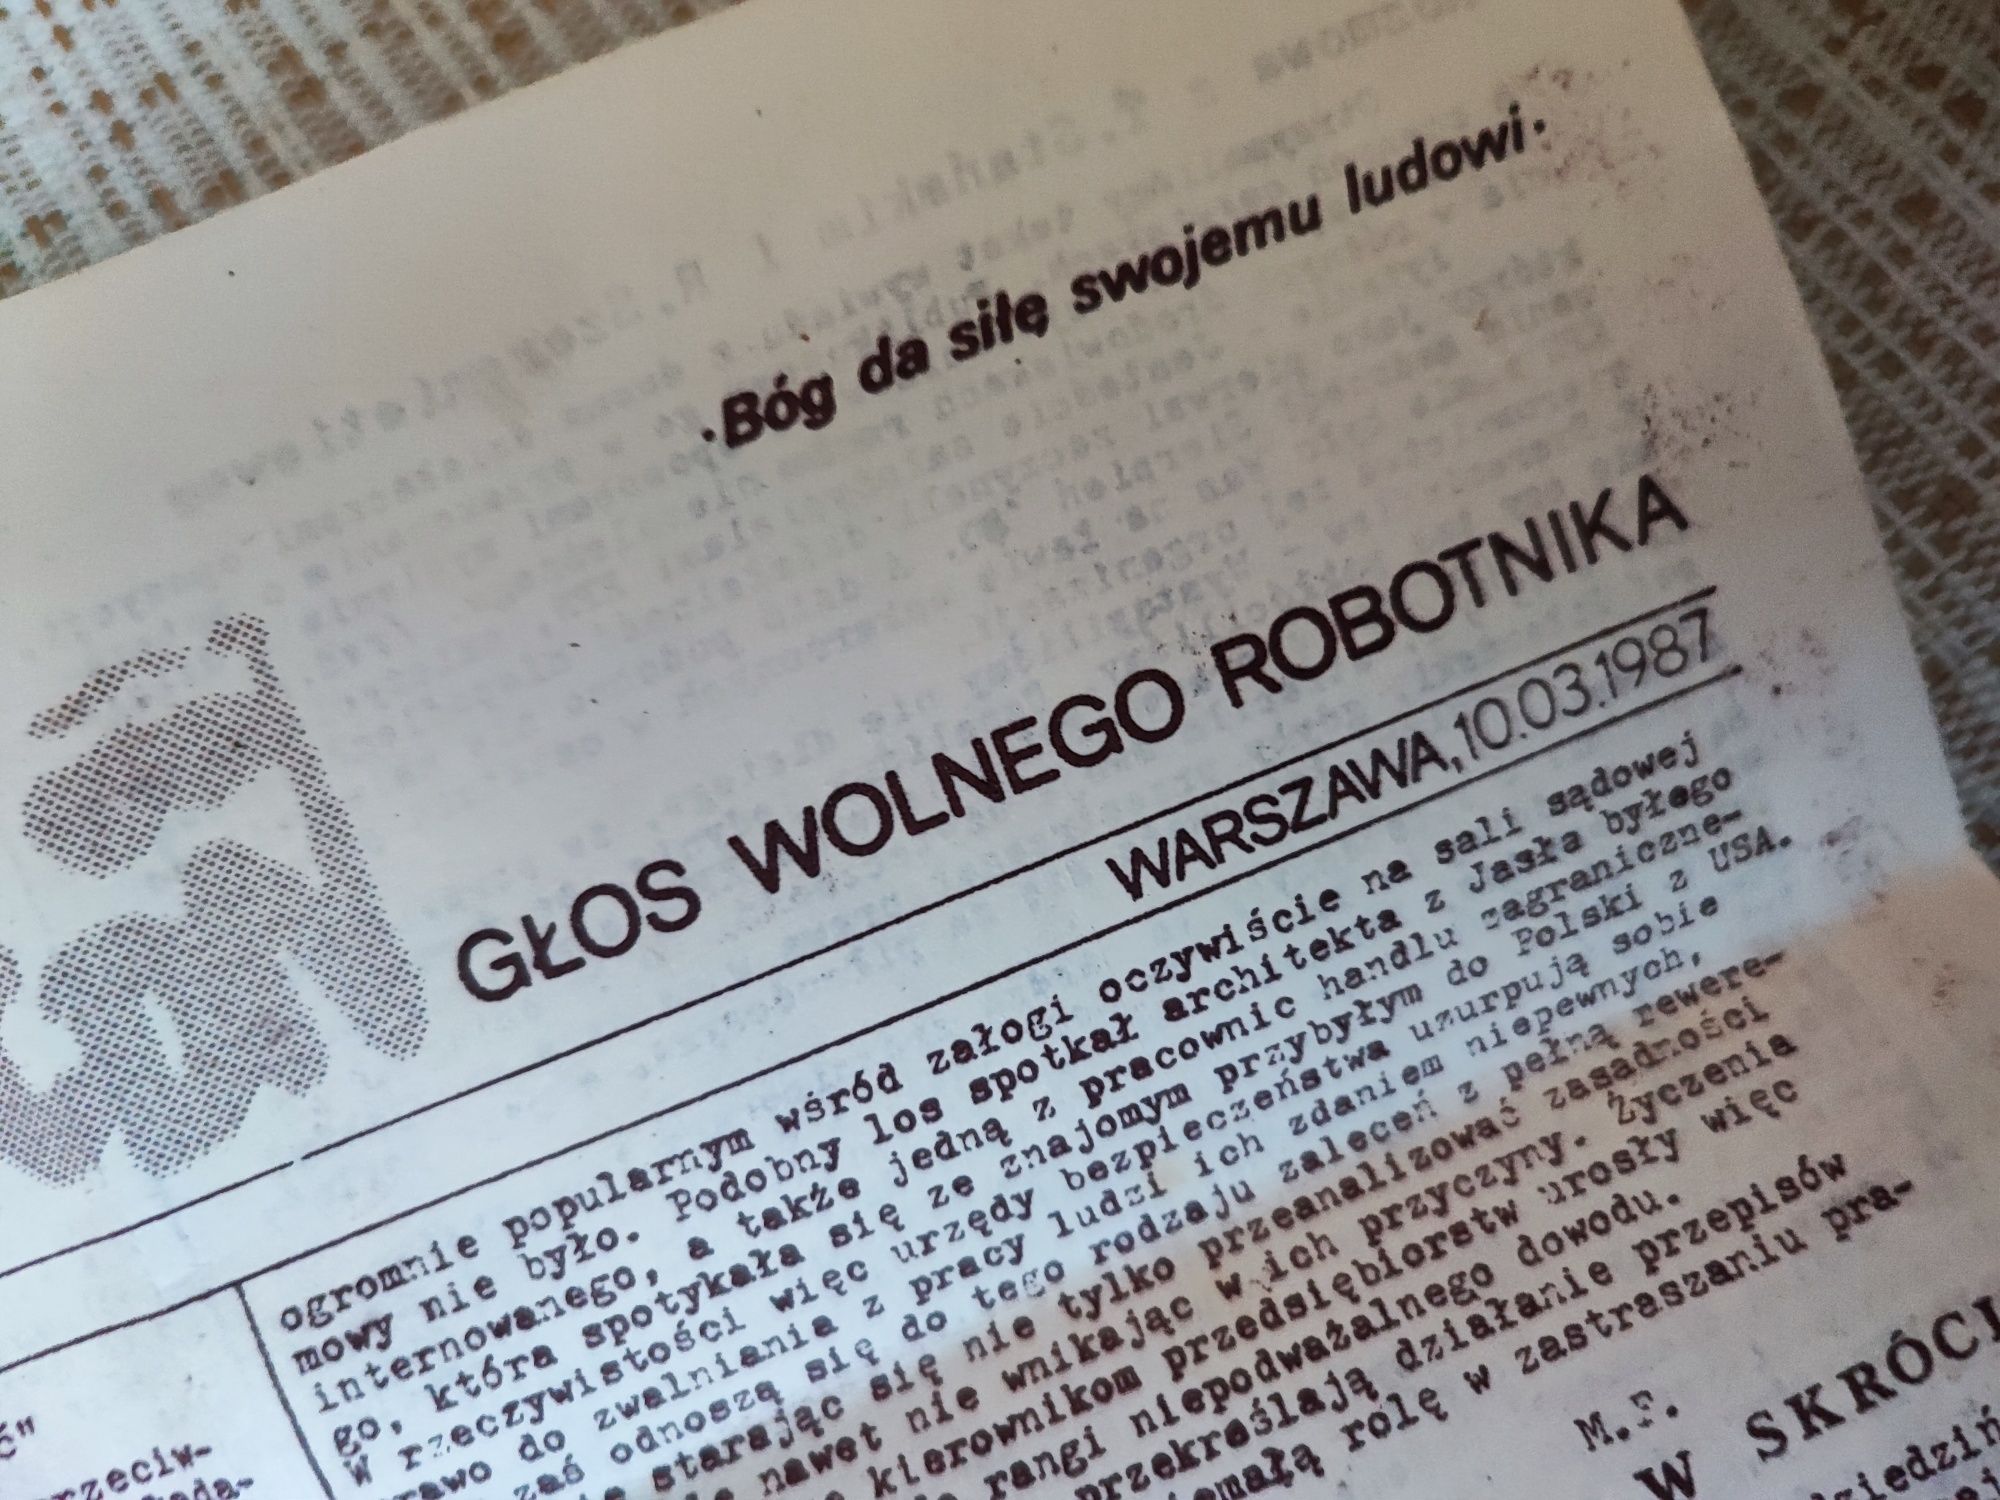 MRKS Tygodnik Głos Wolnego Robotnika 10 marca 1987 r. "Solidarność"